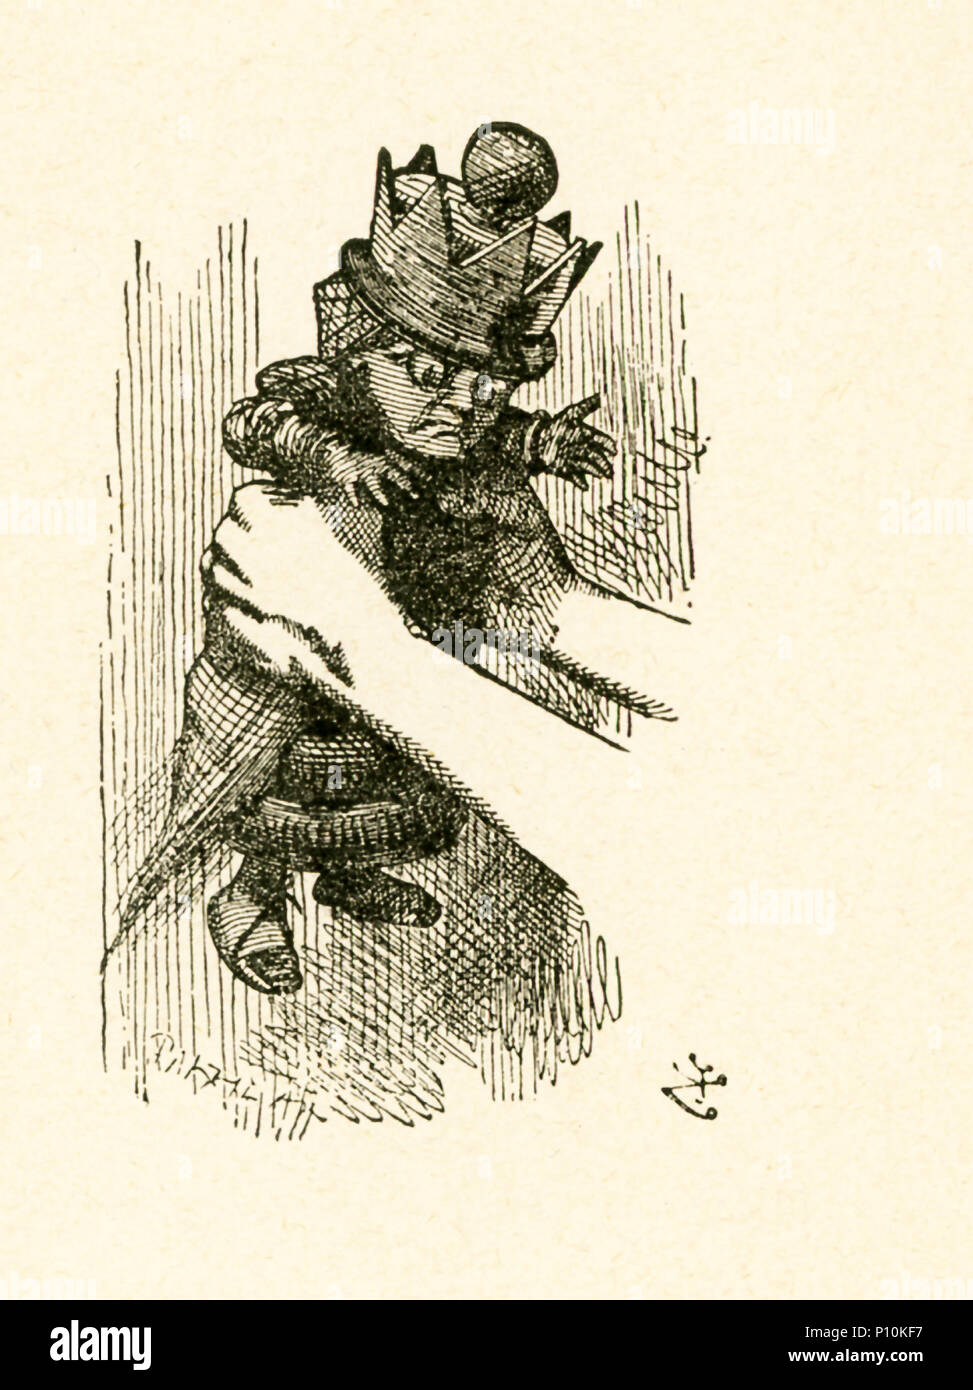 Questa illustrazione di Alice tenendo la Regina Rossa è da 'attraverso il Looking-Glass e quello che Alice vi trovarono' da Lewis Carroll (Charles Lutwidge Dodgson), che ha scritto questo romanzo nel 1871 come un sequel di "Alice nel paese delle meraviglie". Foto Stock